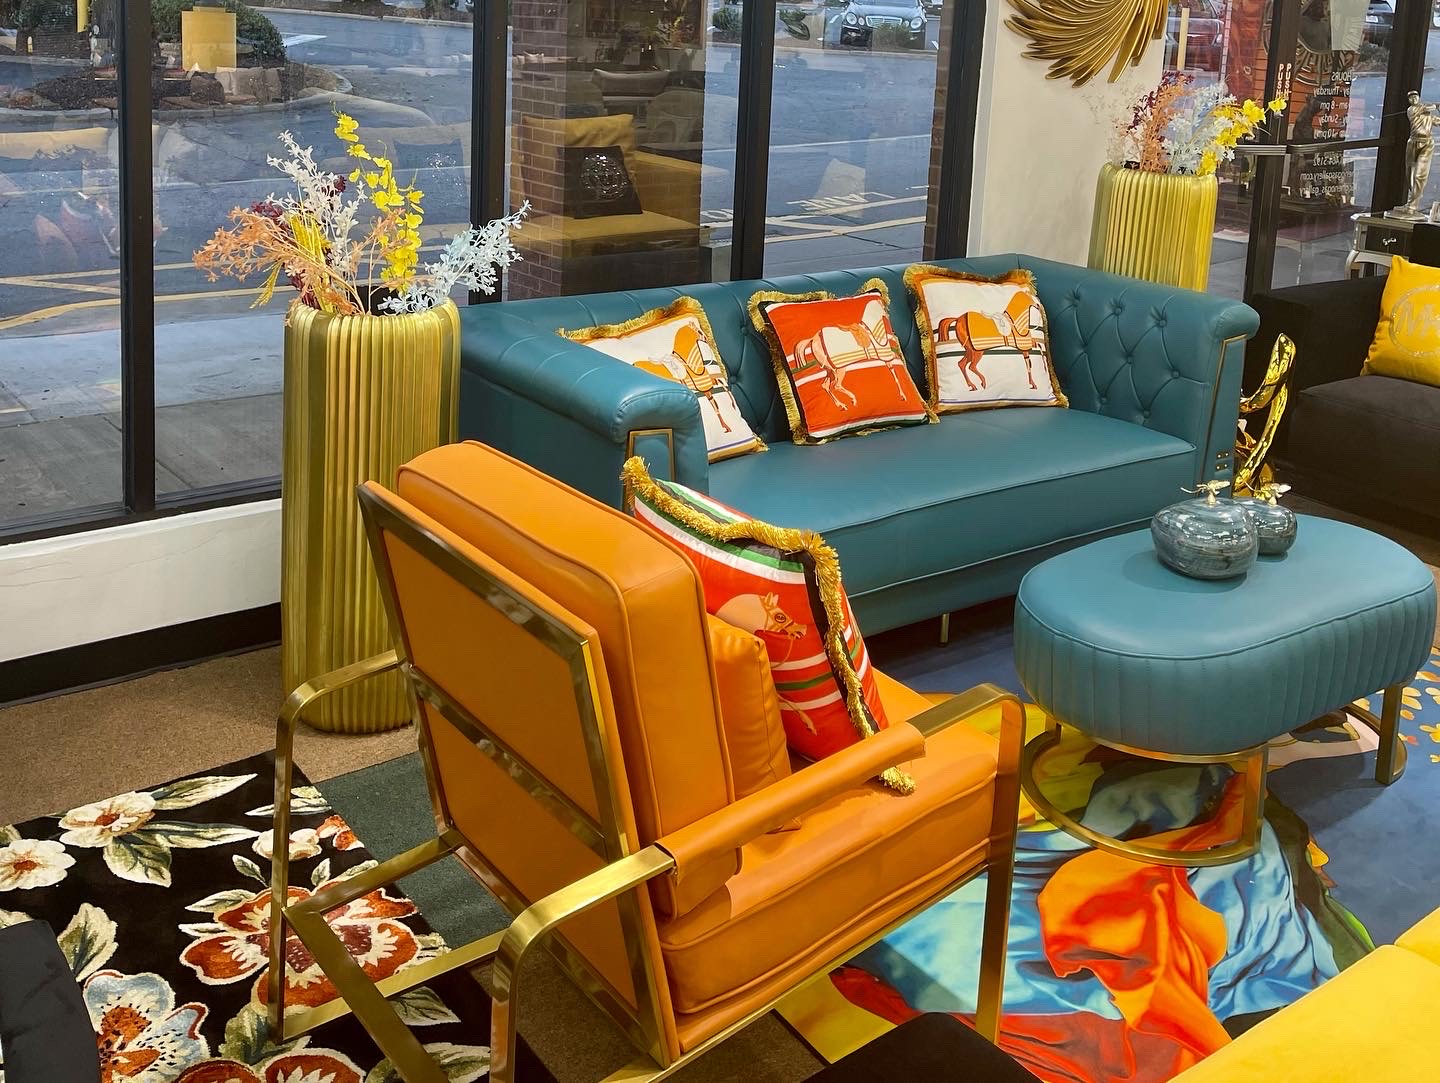 Teal and Orange Living Room Set